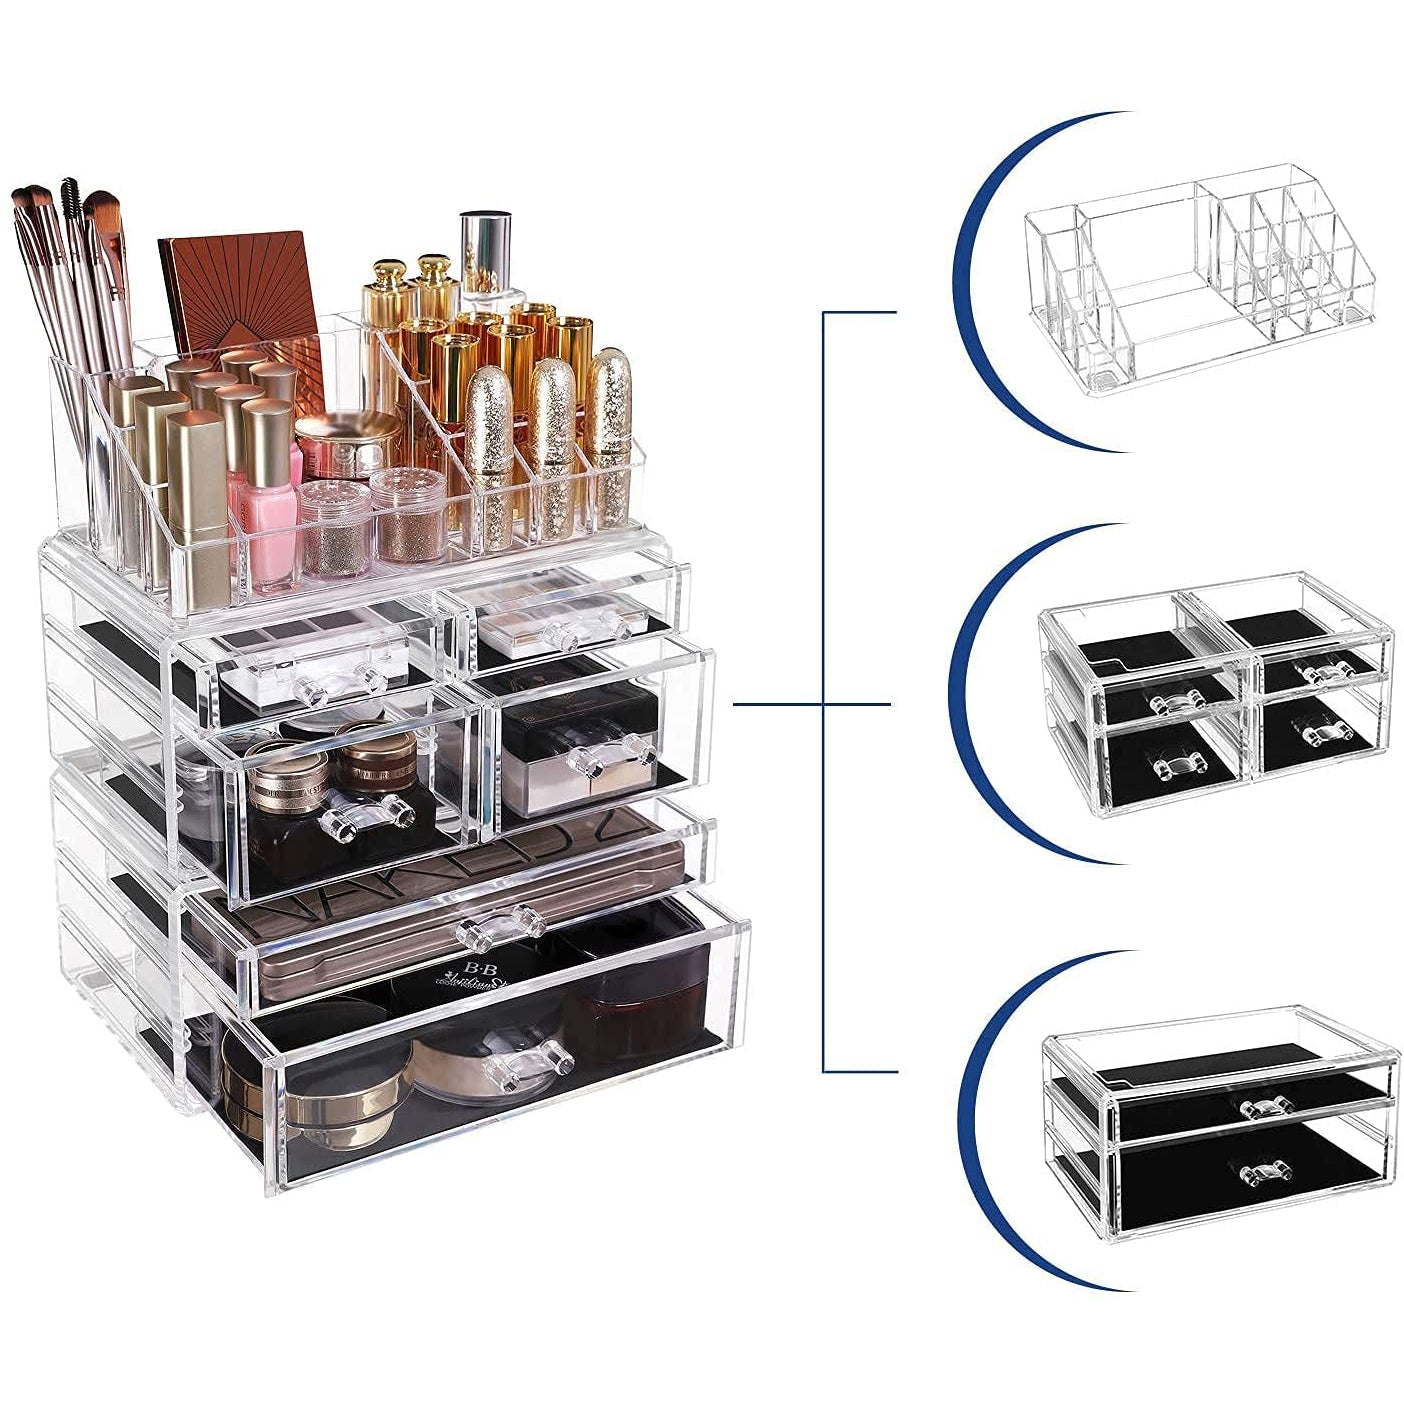 Rangement maquillage Nancy's Bushy Lake - Organisateur de cosmétiques - Boîte de maquillage - Acrylique - 2 parties - 6 tiroirs - Transparent/Blanc - 24 x 30 x 13,5 cm